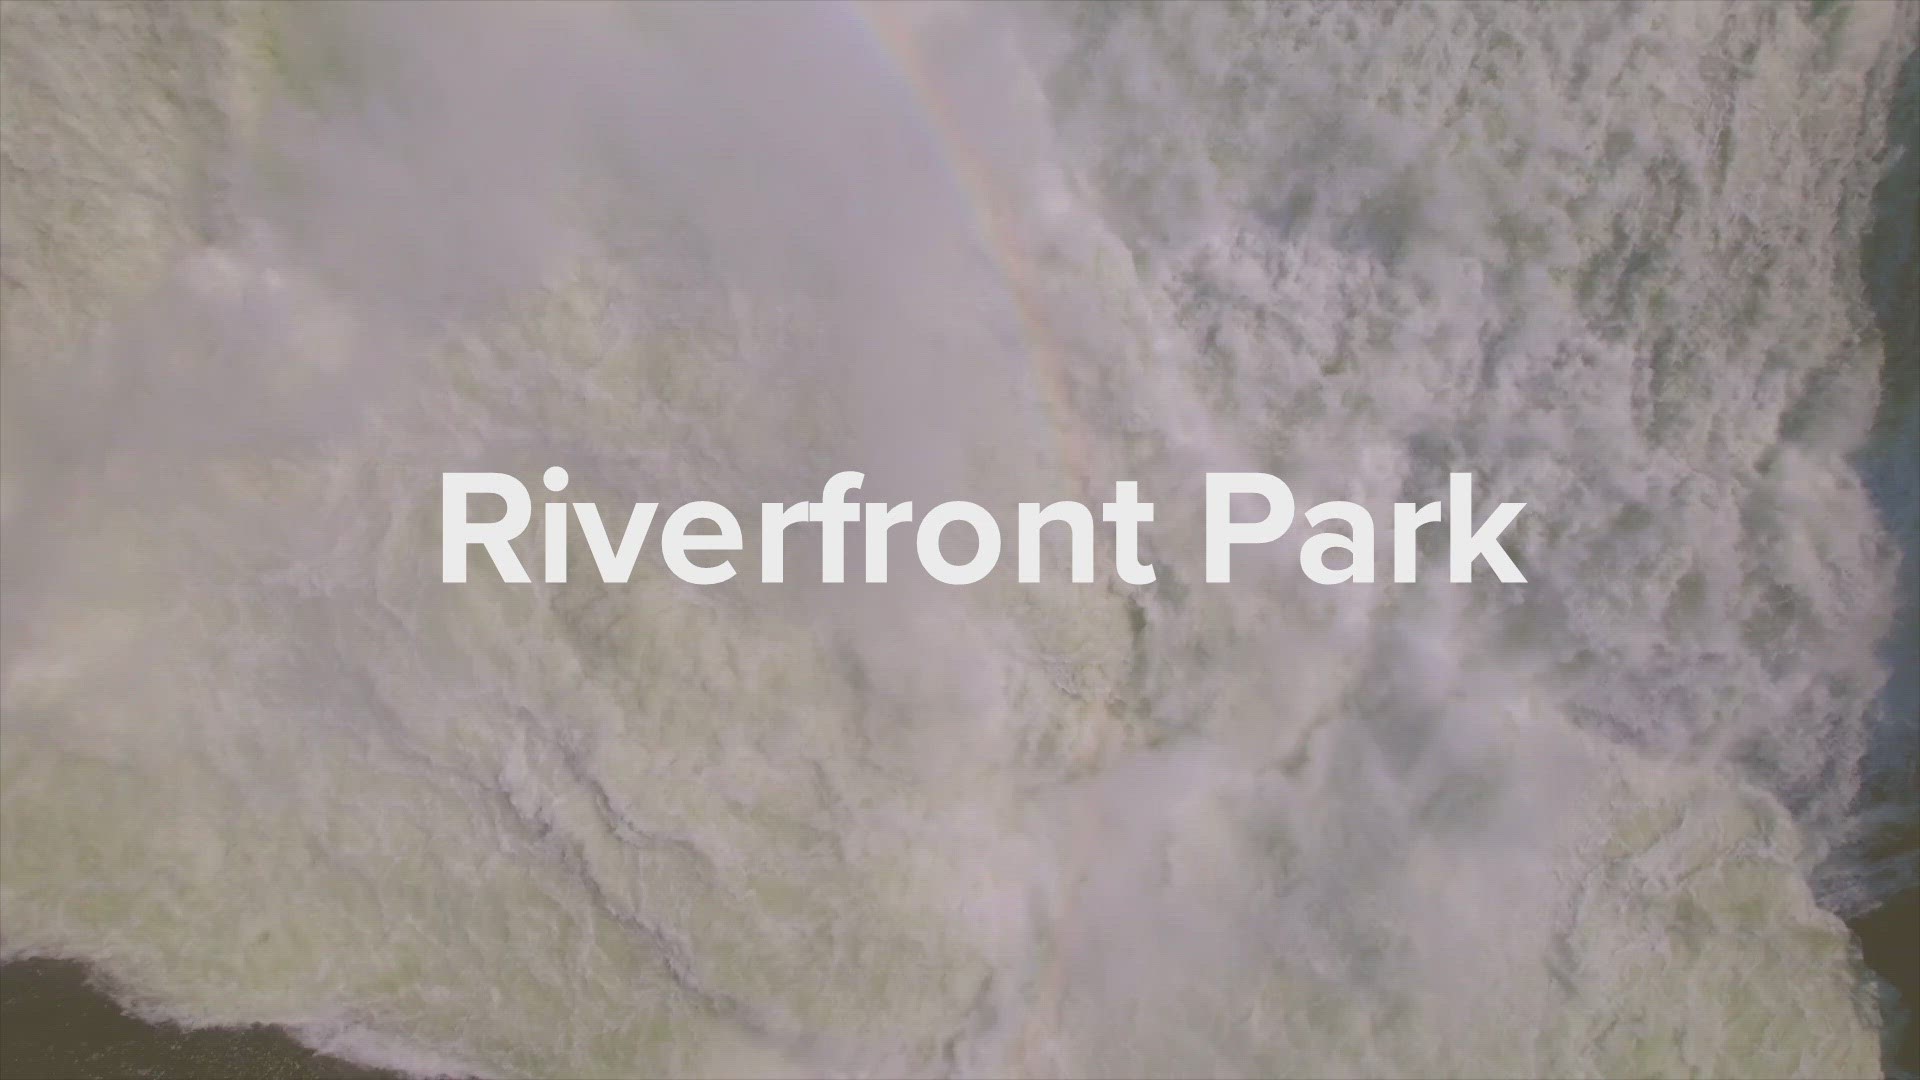 Take a look at Spokane's Riverfront Park!